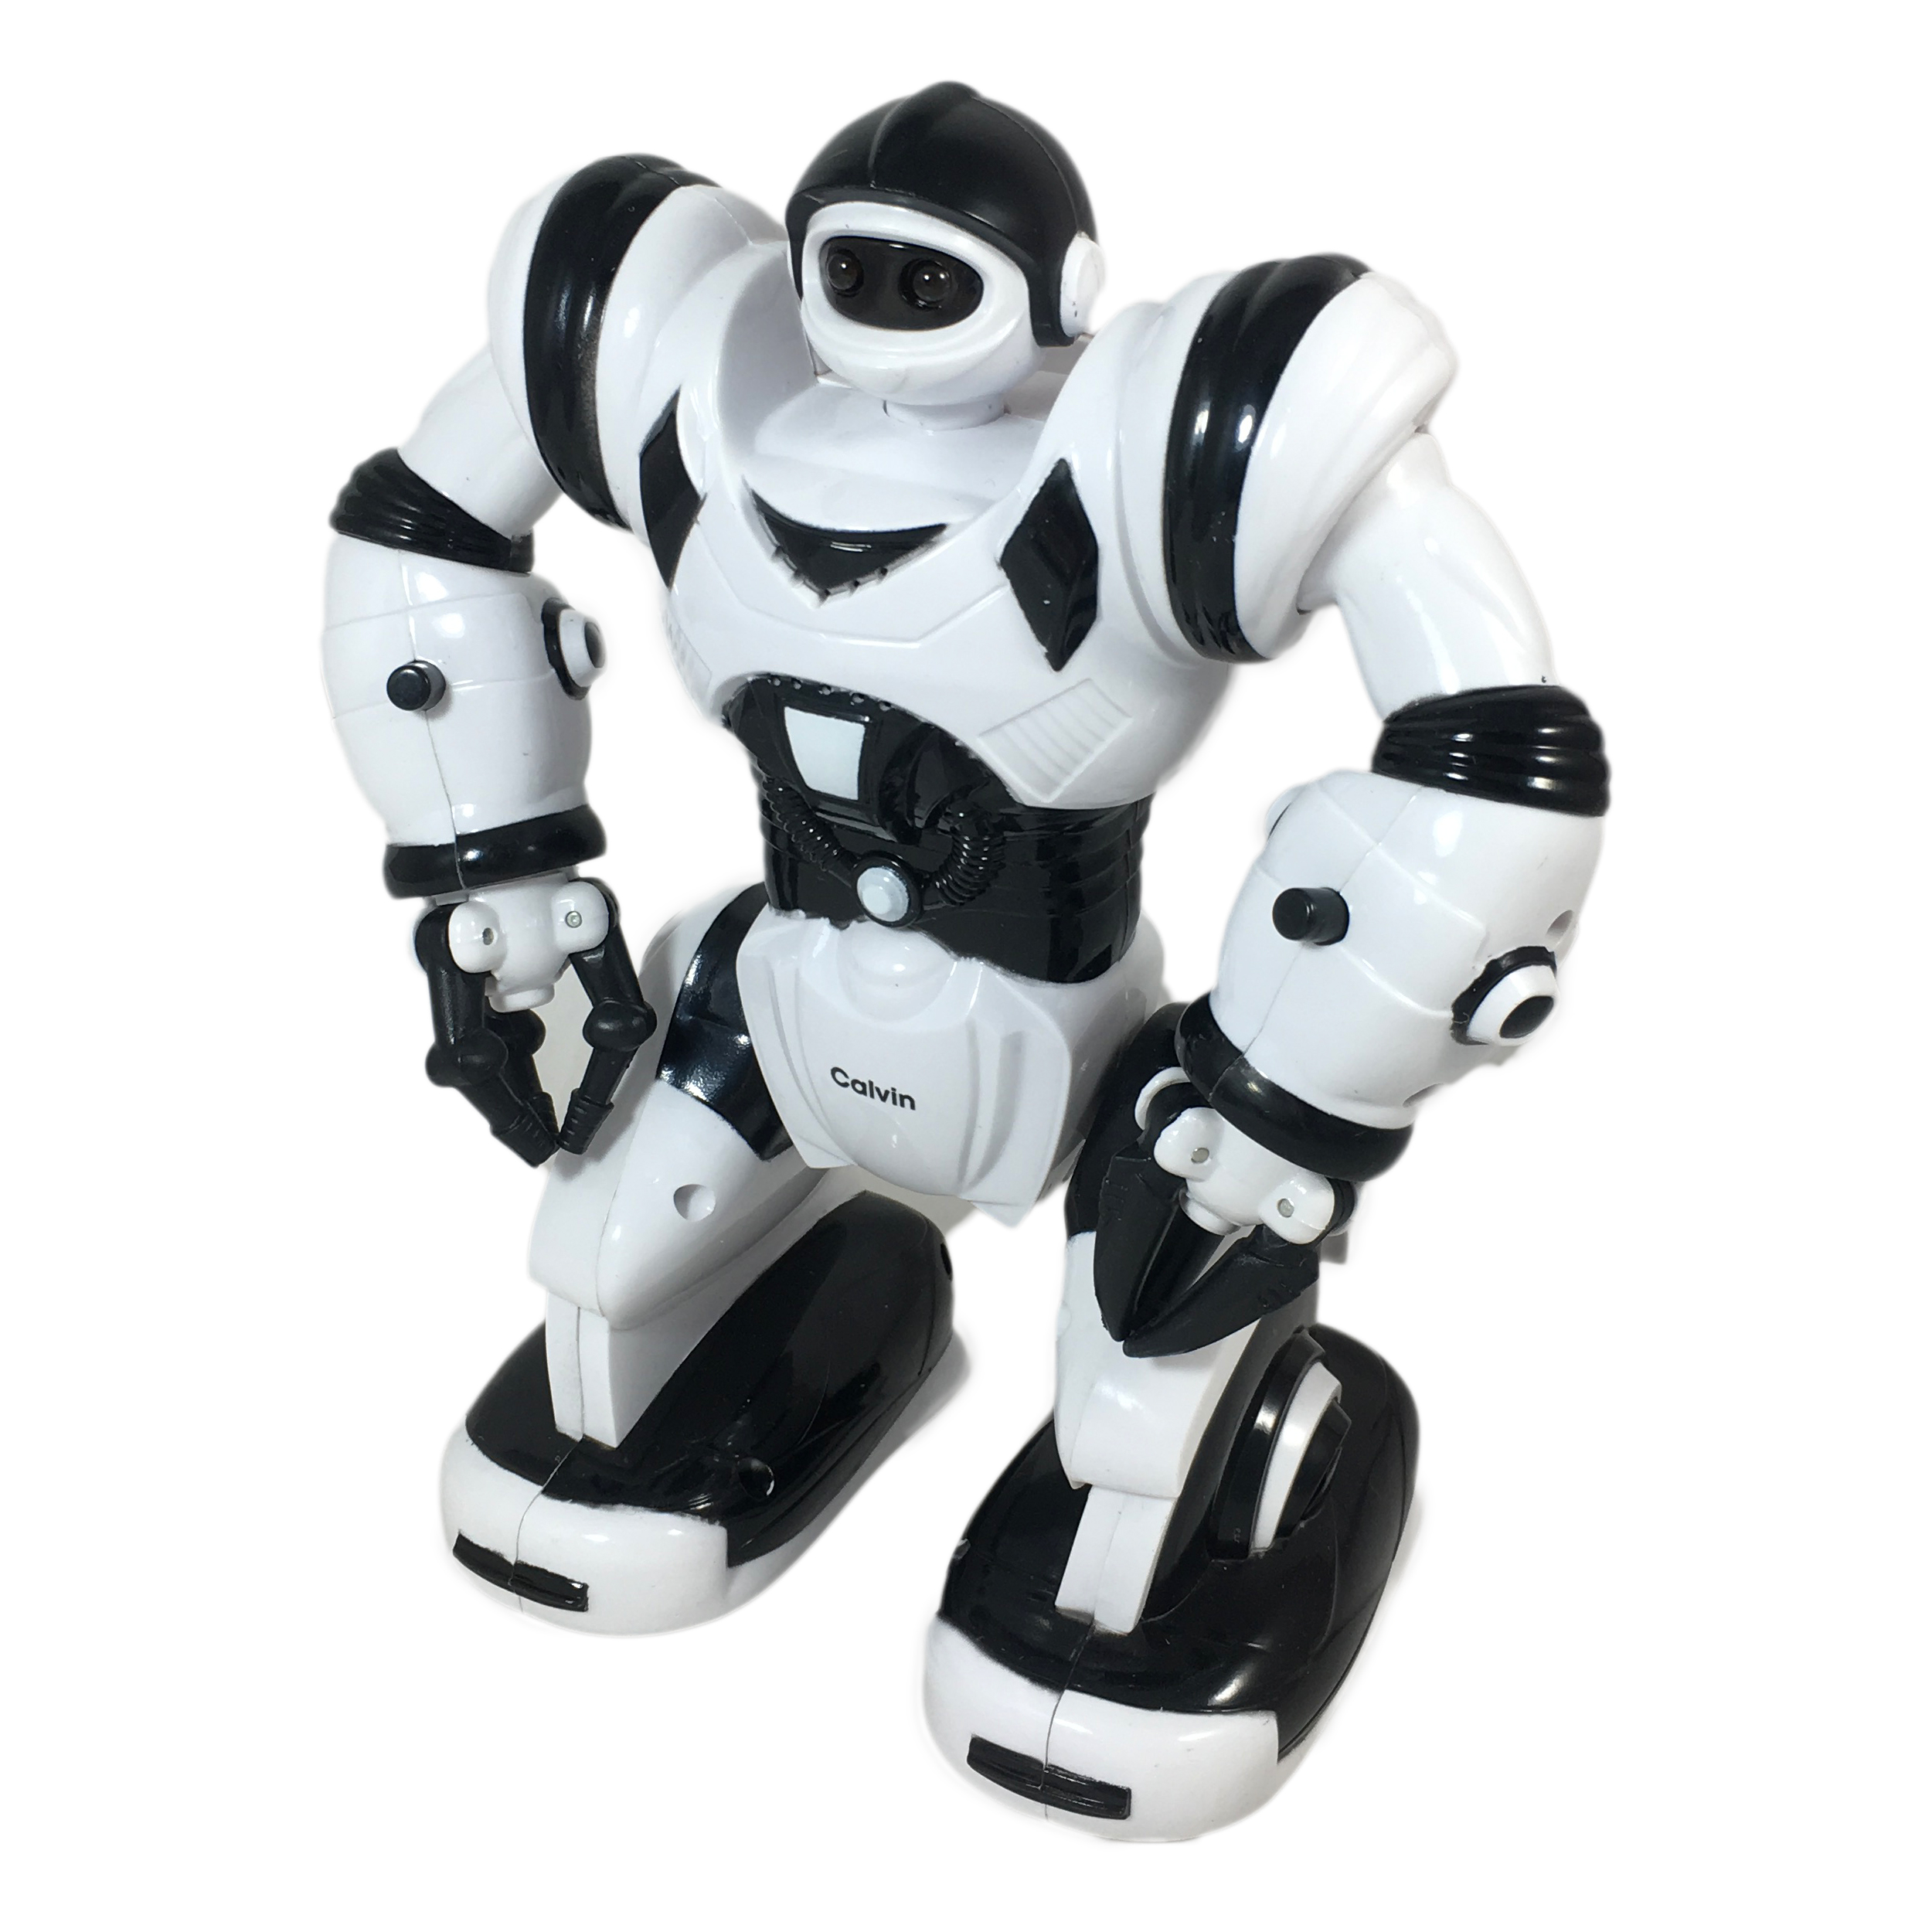  ربات اسباب بازی فنگ یوان مدل 27106 